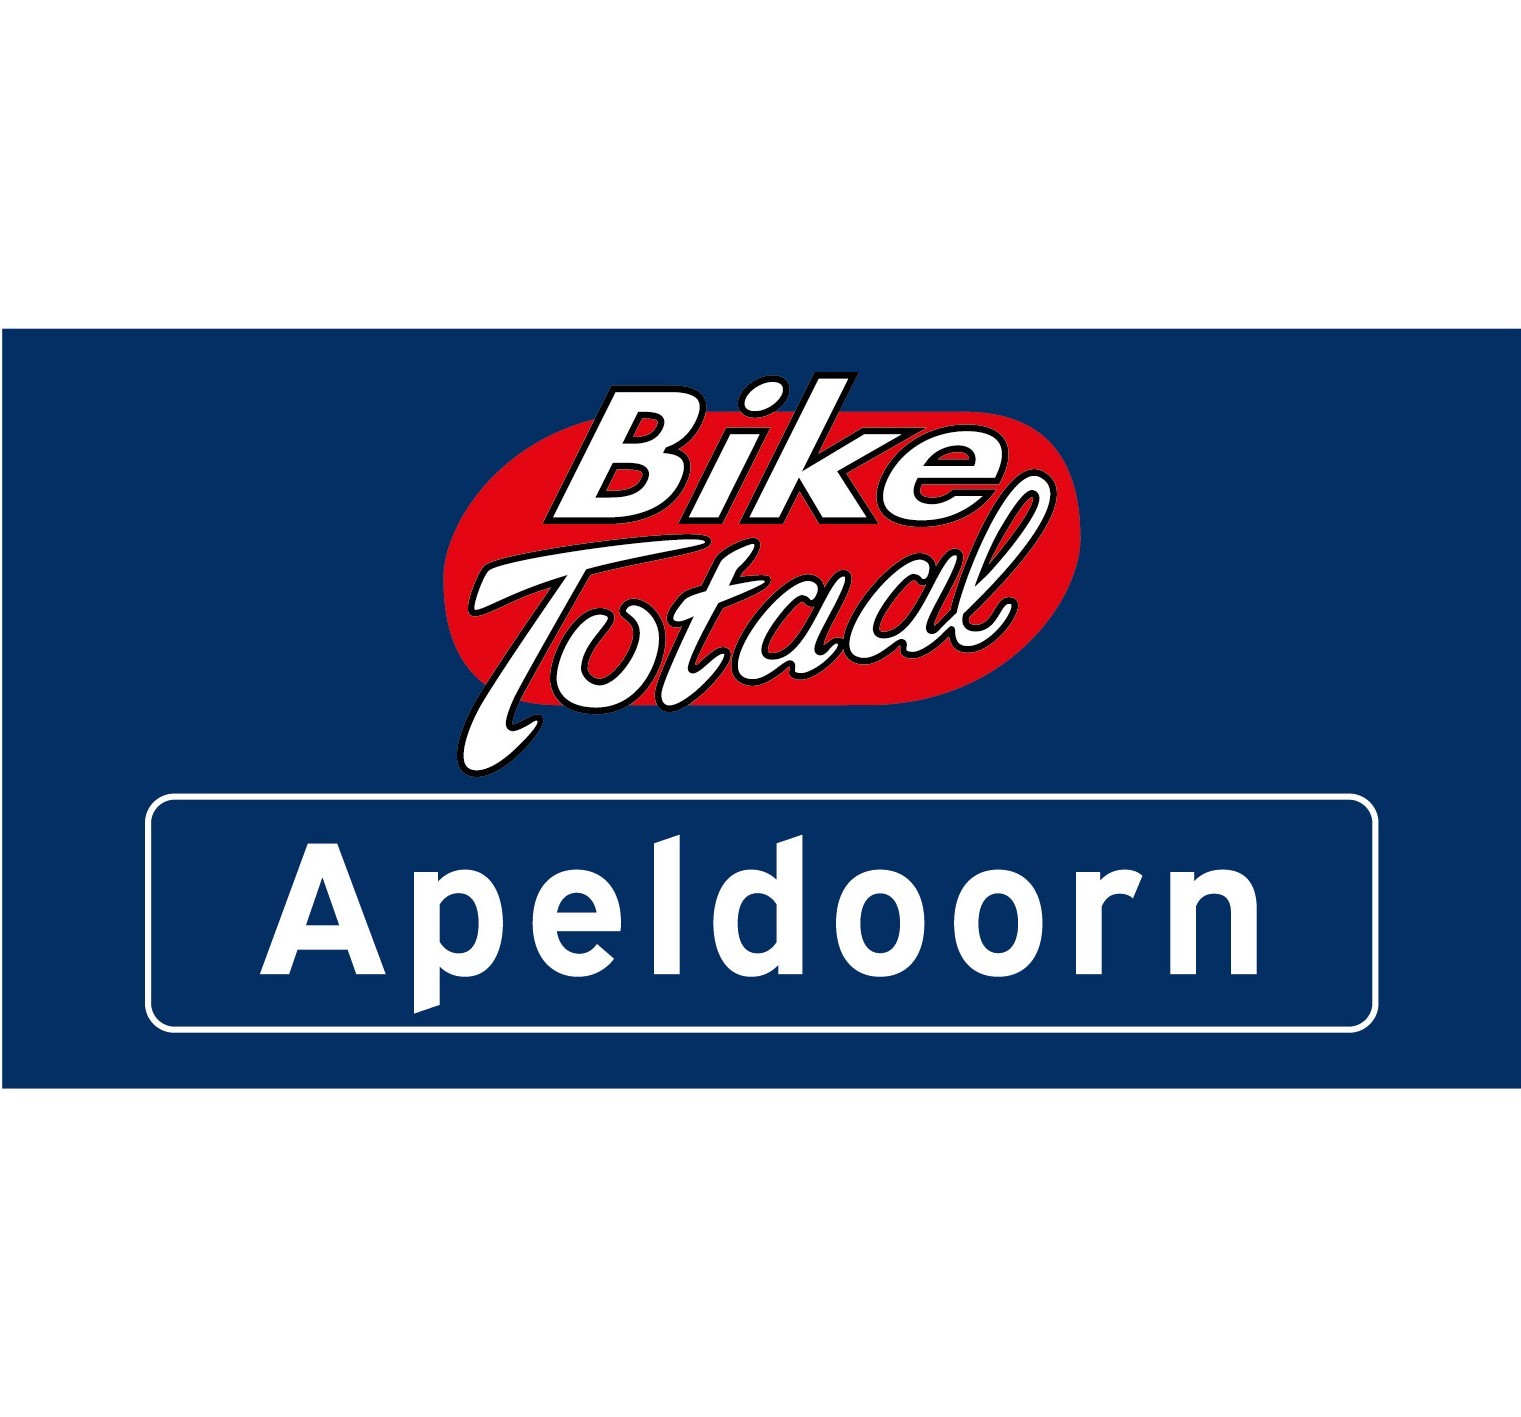 Bike Totaal Apeldoorn